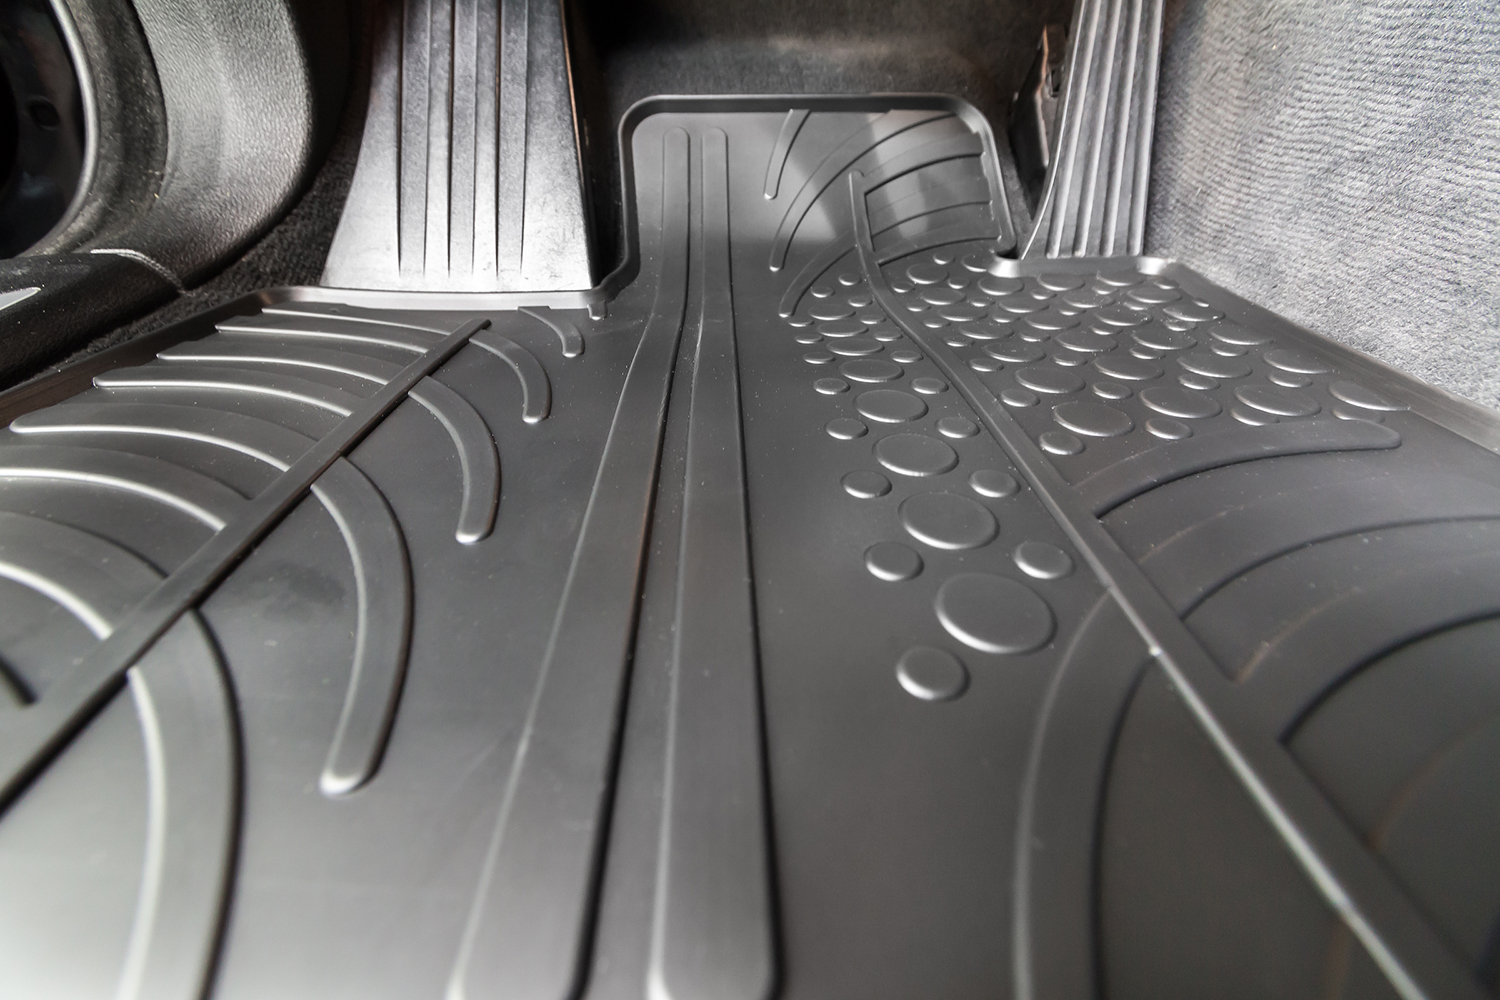 Design Gummi Fußmatten mit erhöhtem Farbe L200 passend Schwarz für Pick up 2015> tlg Rand Mitsubishi 4 Aroba passgenau Automatten Gummimatten 